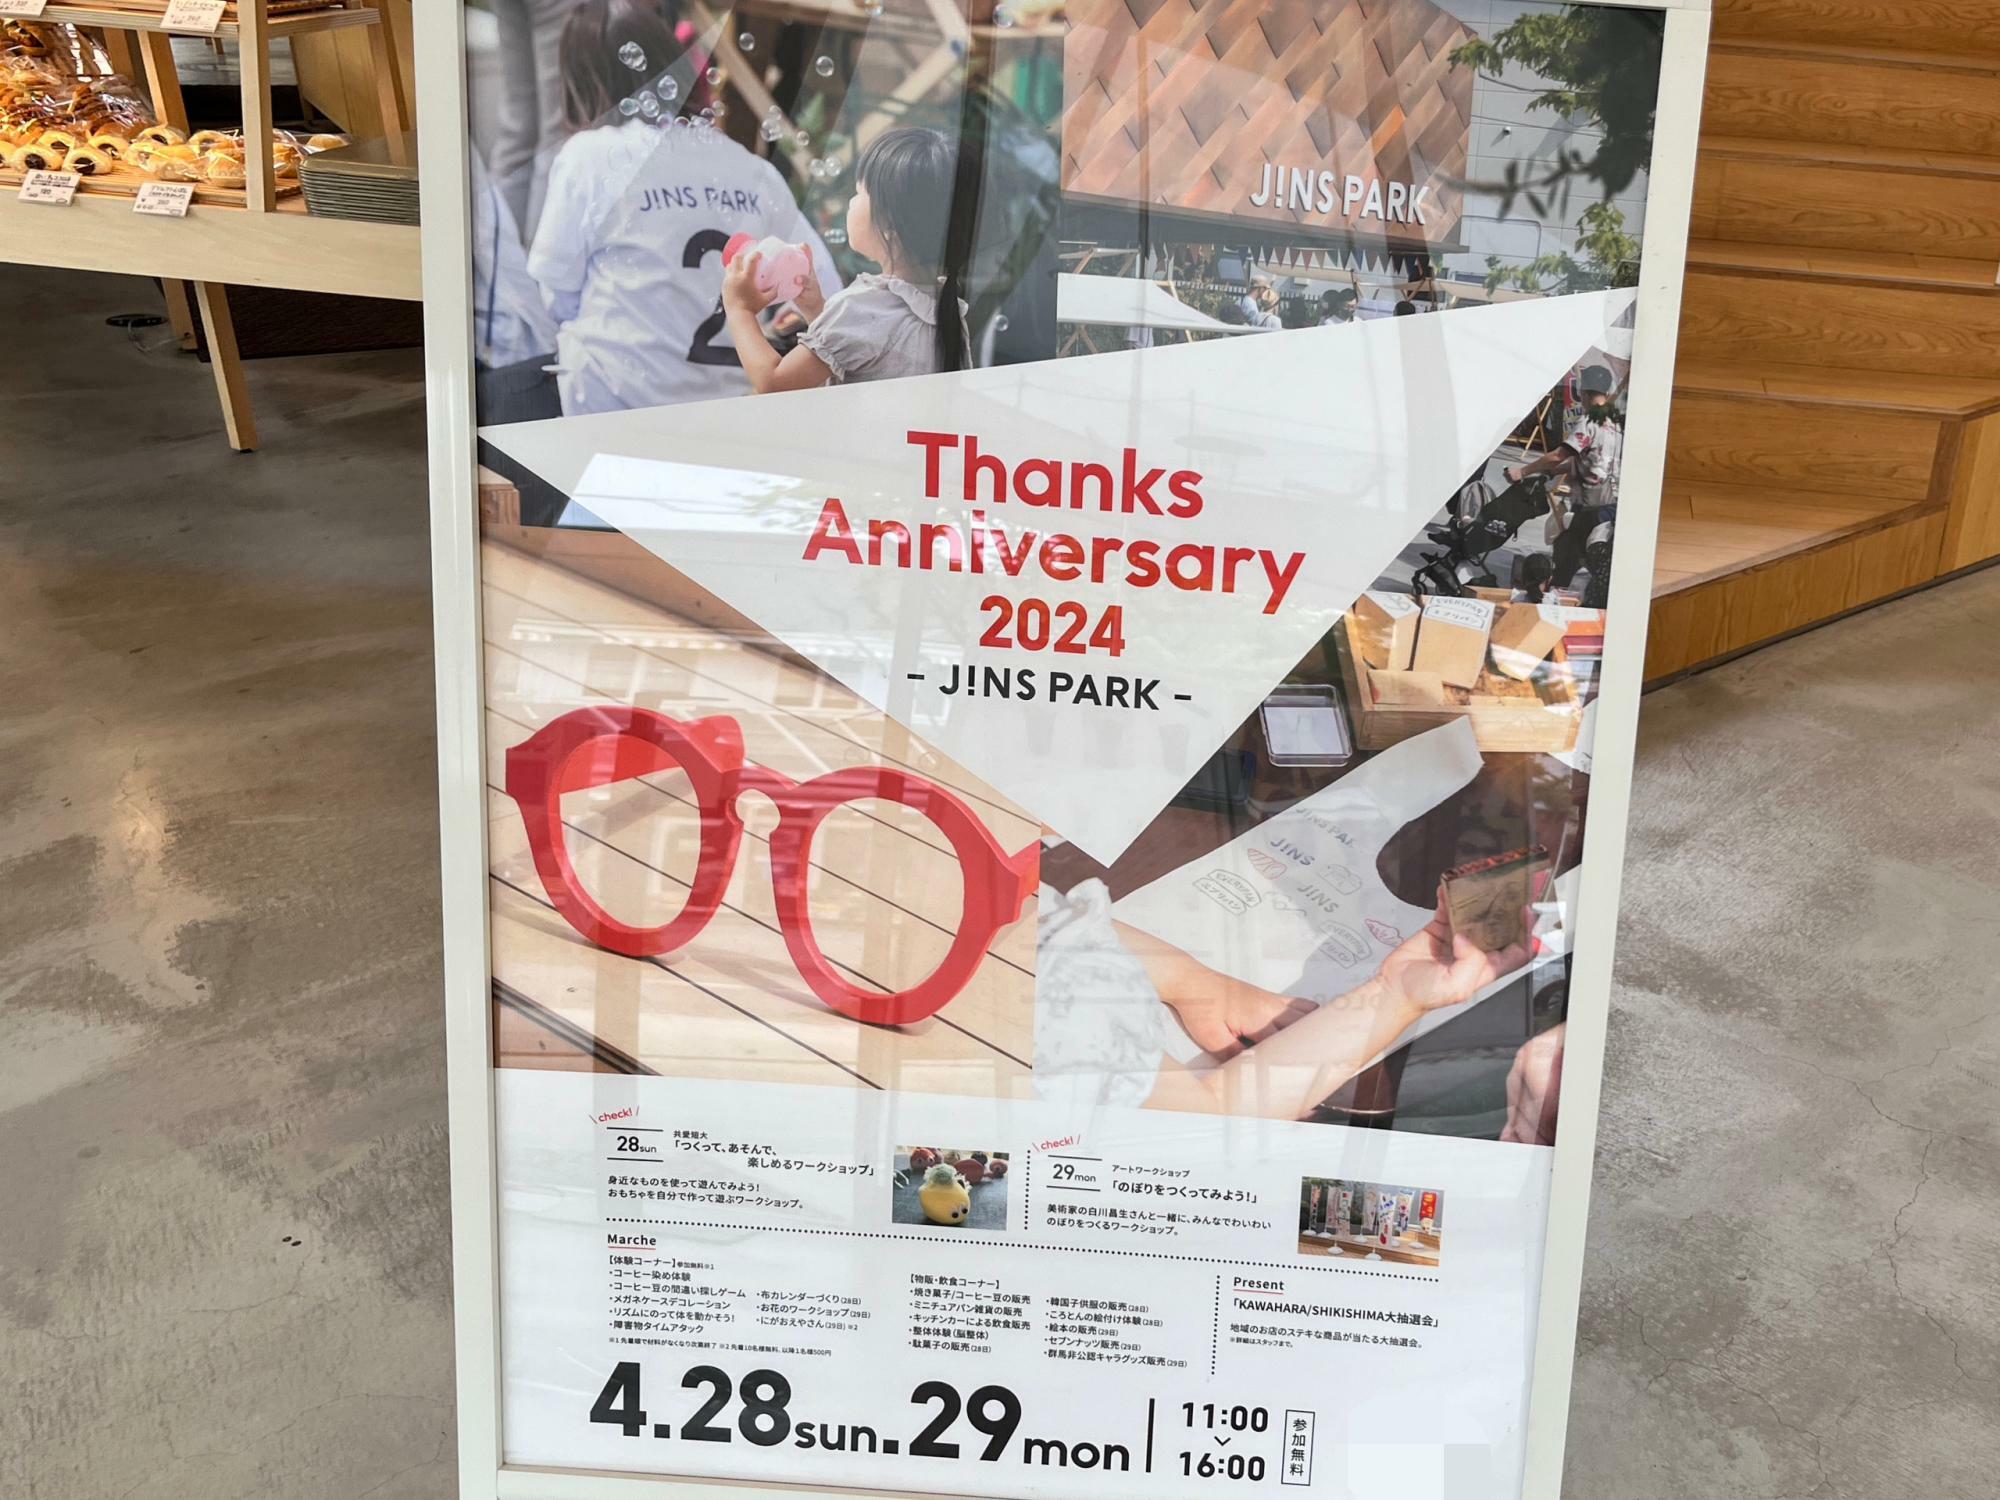 「Thanks Anniversary 2024」開催告知の看板